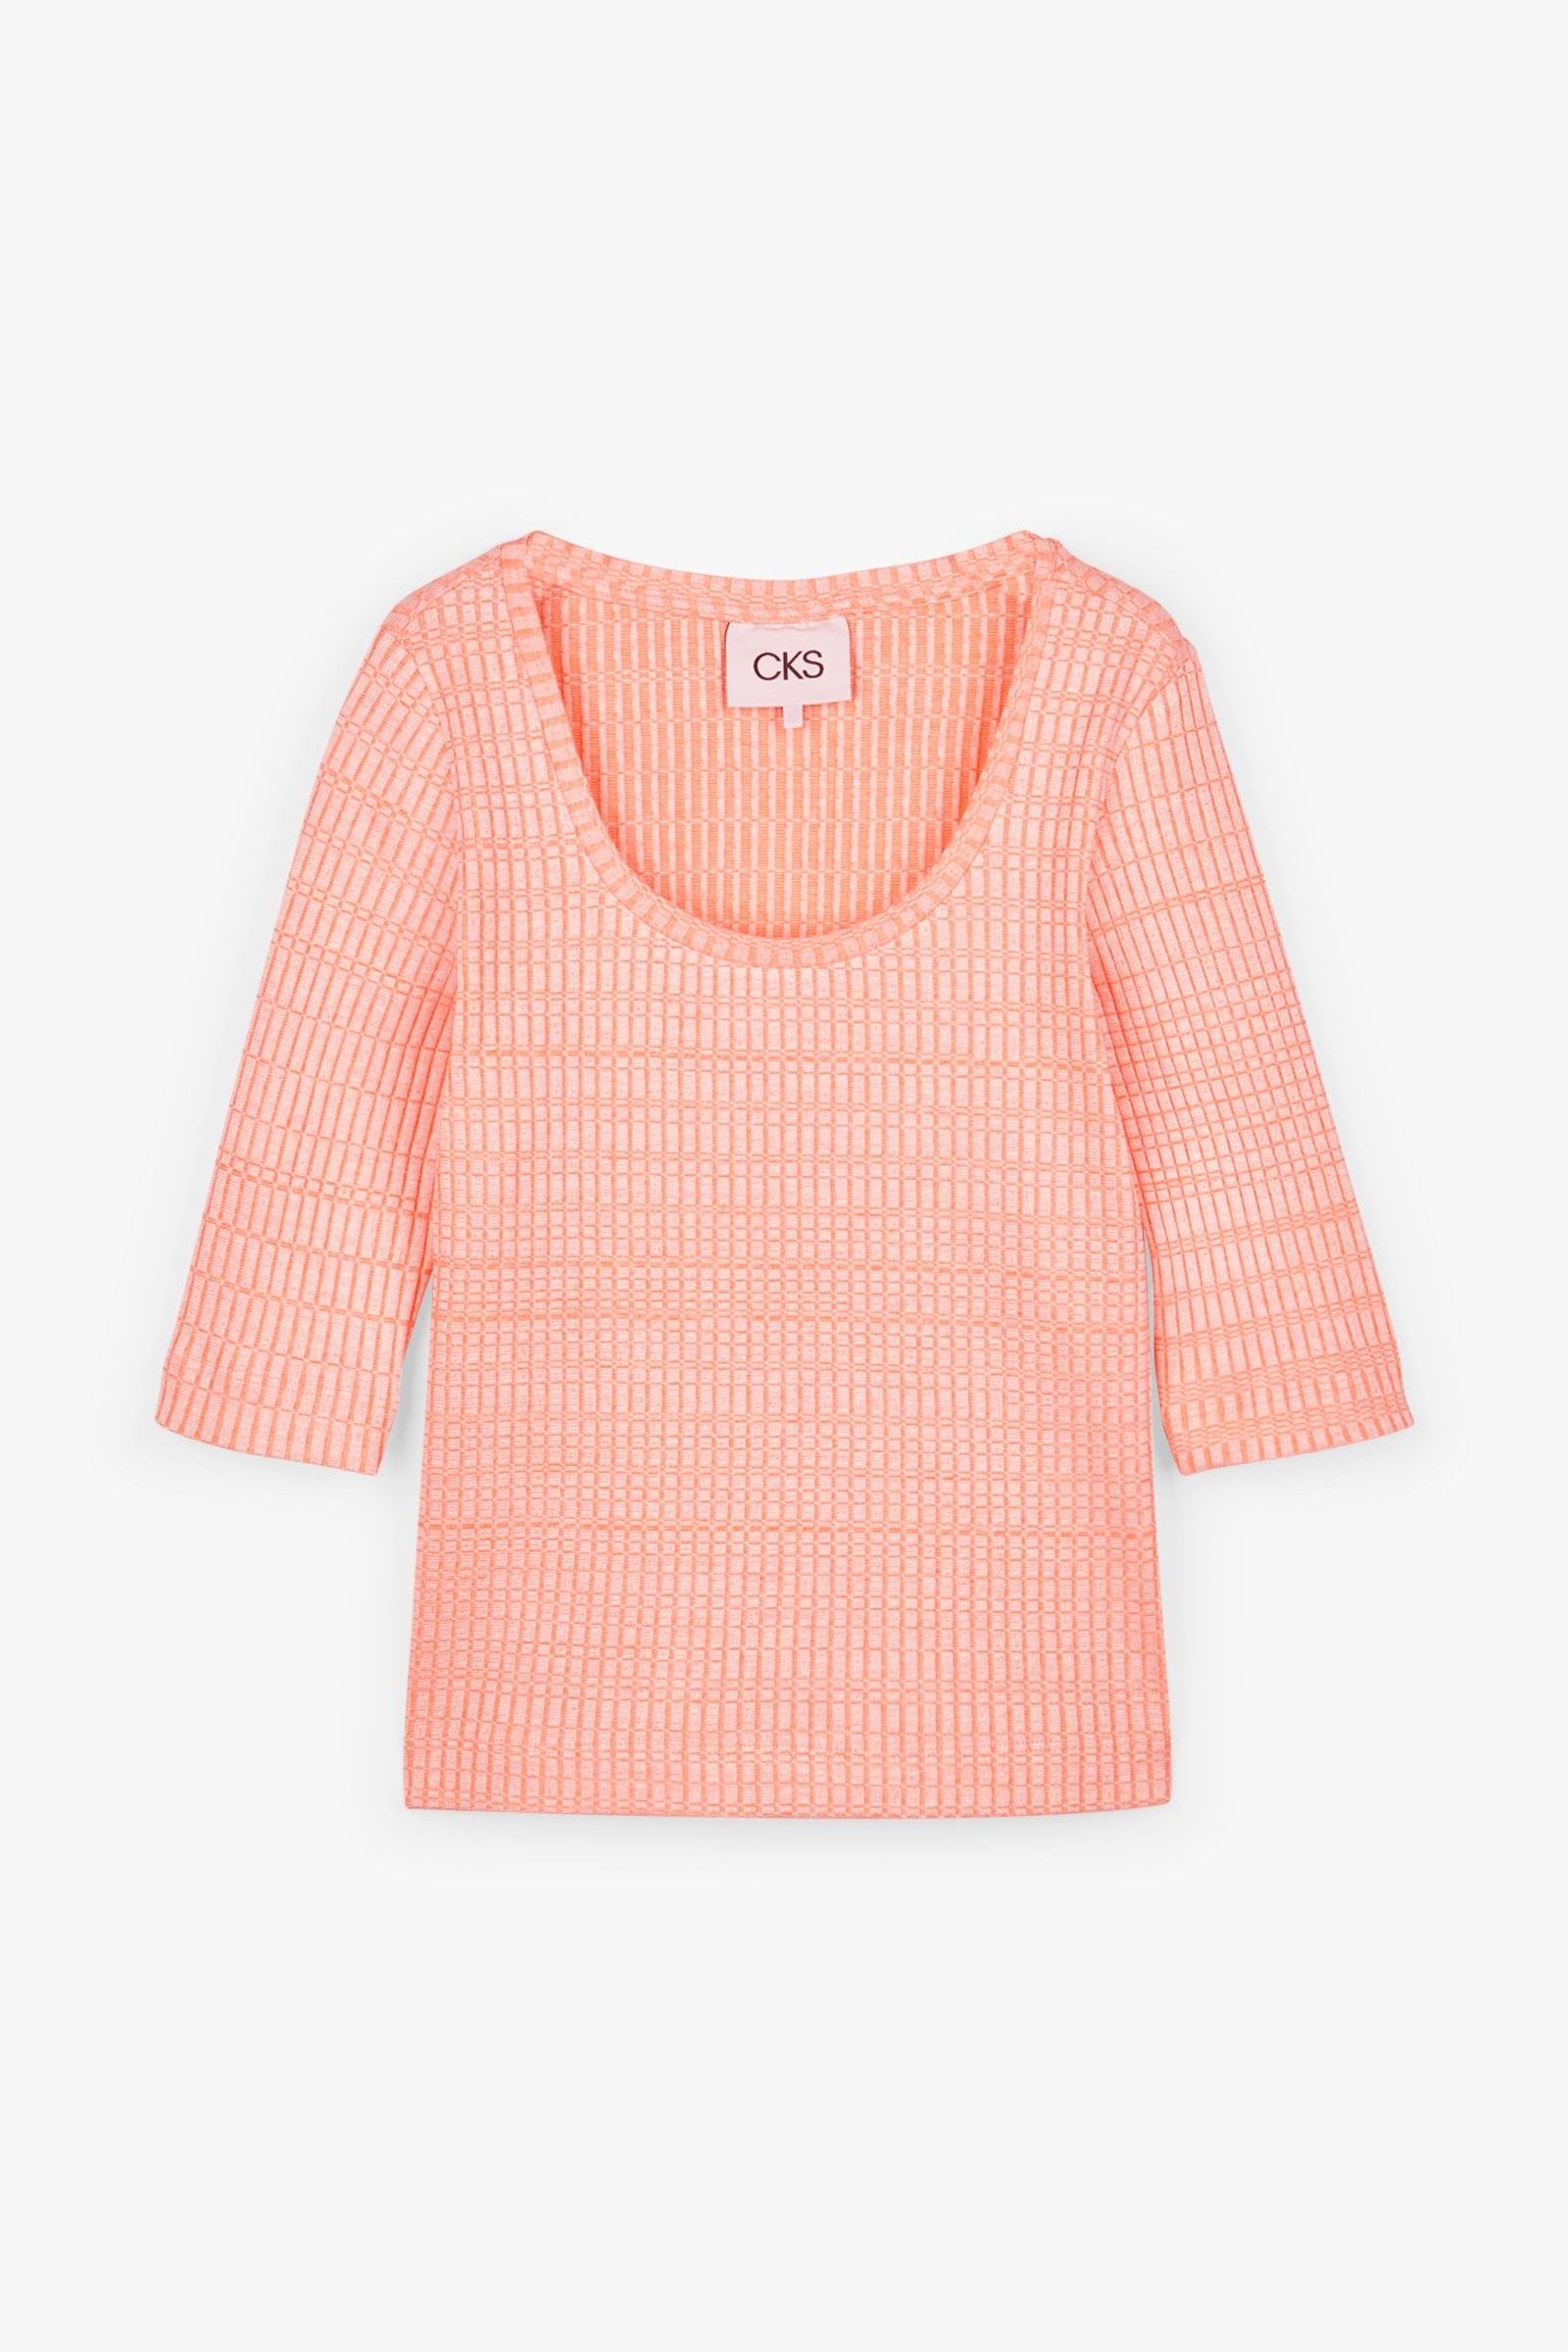 CKS Dames - SAVI - t-shirt met driekwart mouwen - intens oranje